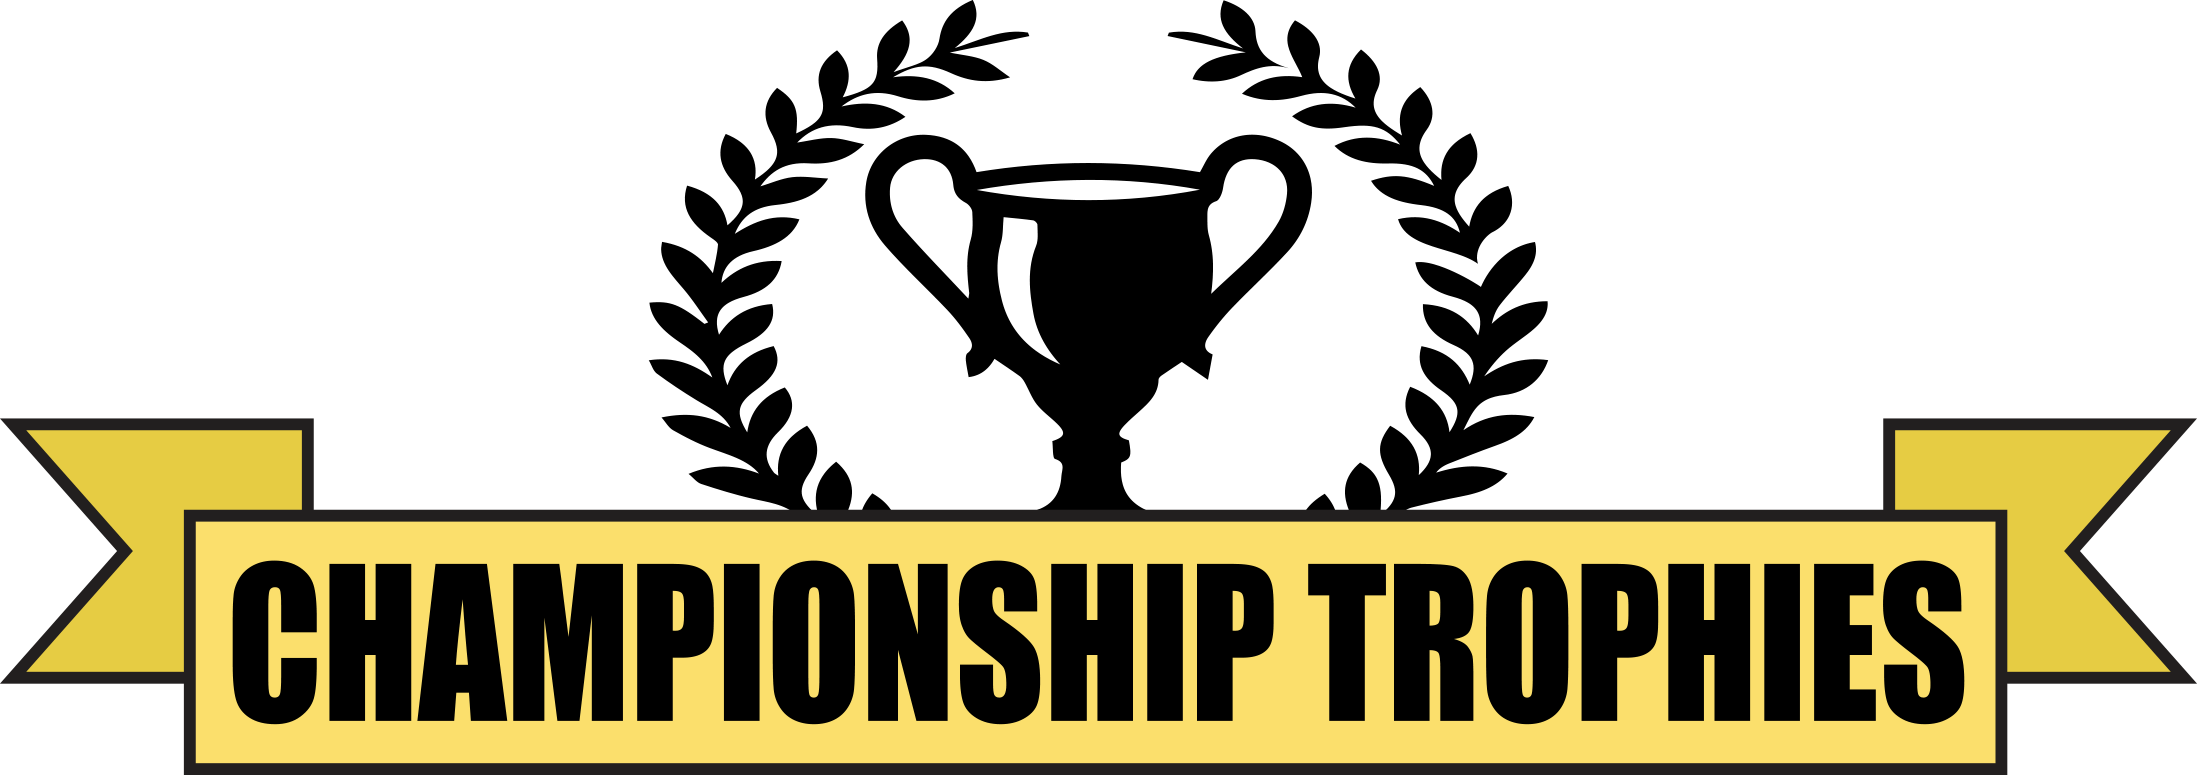 Trophies Logo - Custom Trophies in Lapeer, MI | Championship Trophies